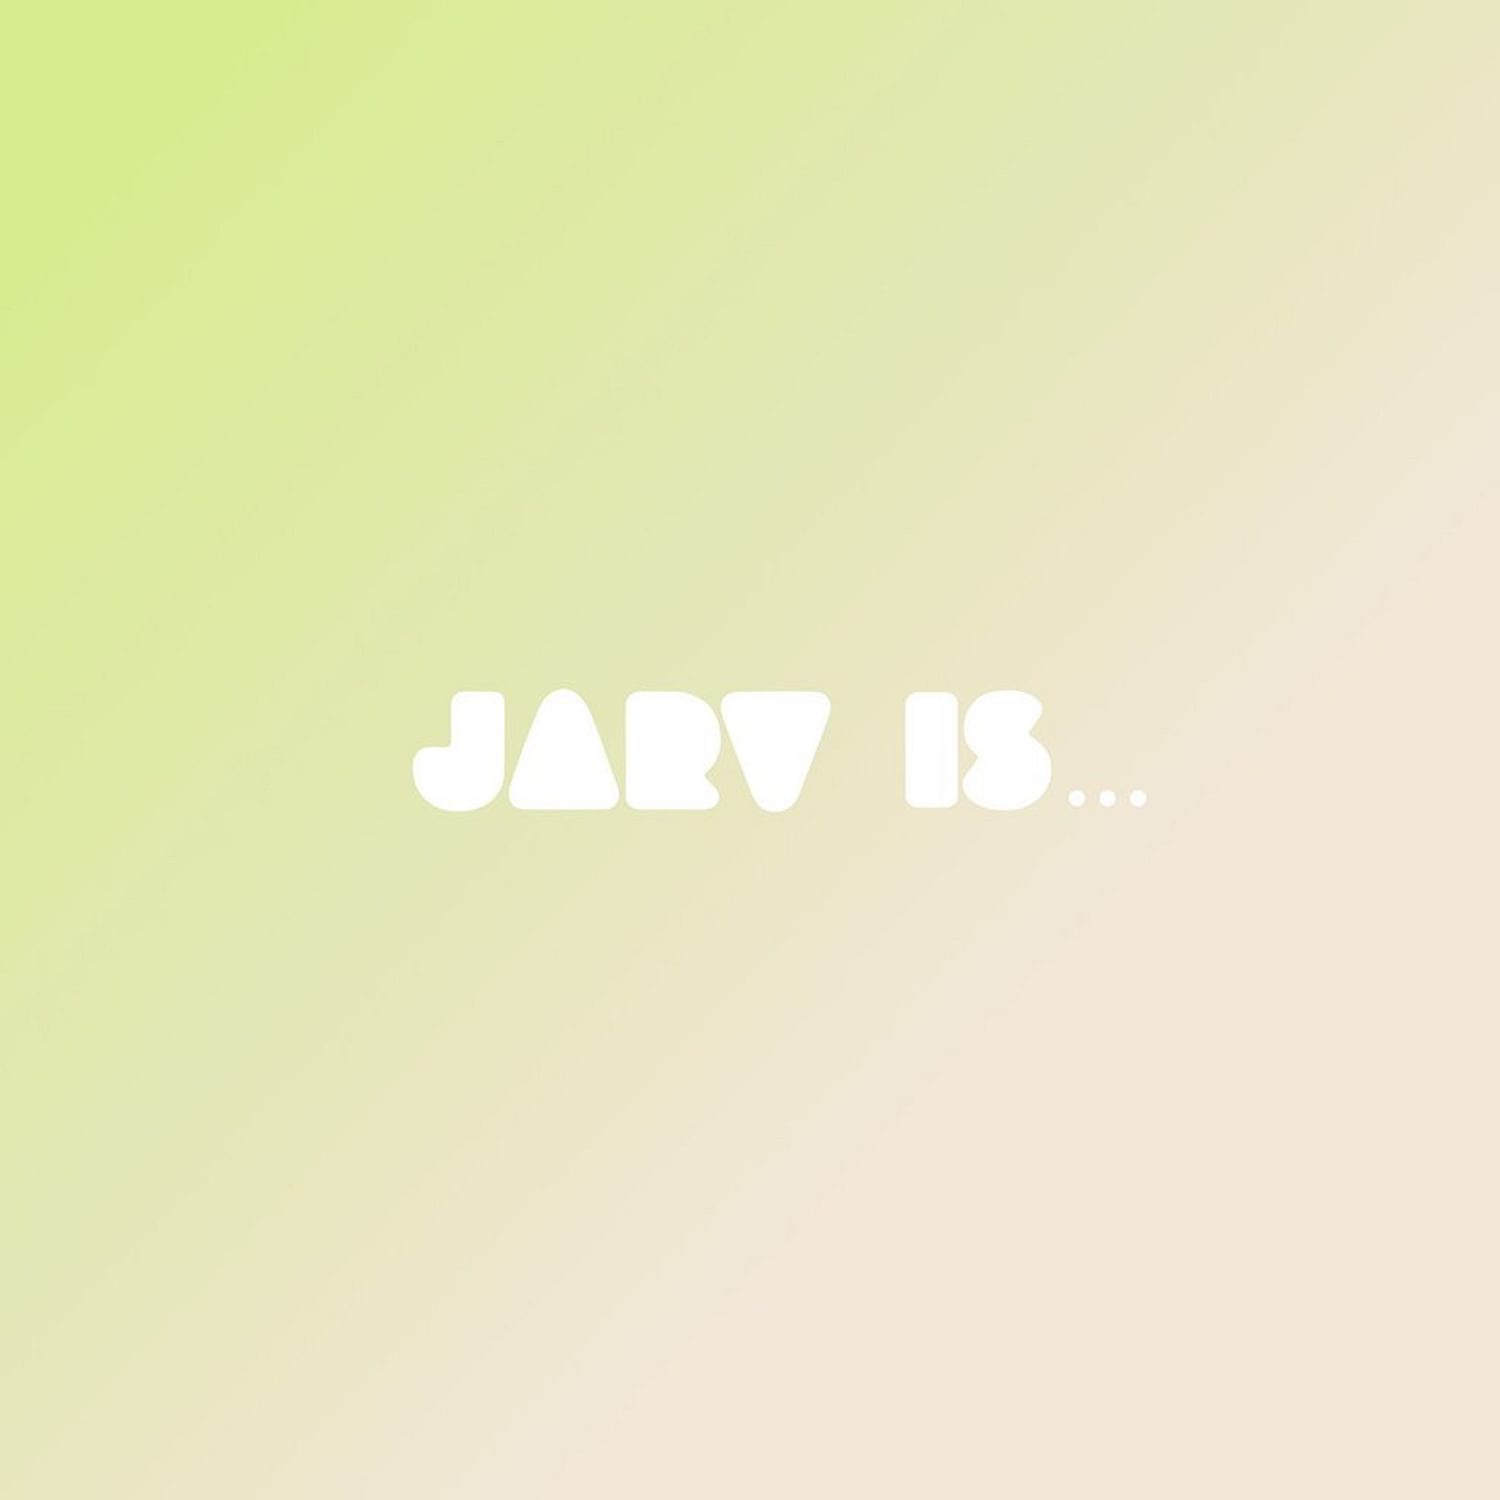 Jarv is... - Beyond The Pale